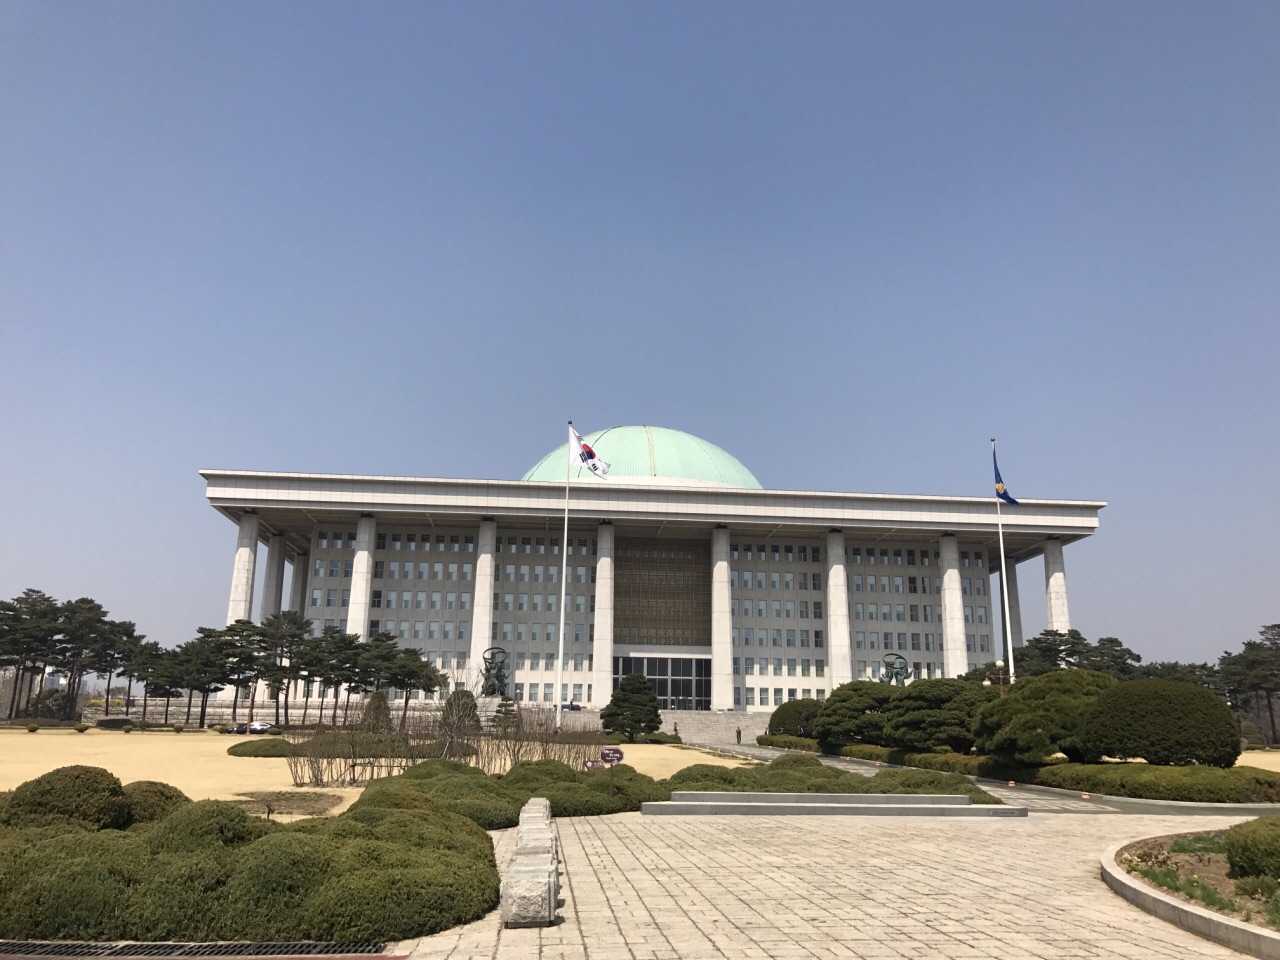 首尔国会议事堂图片